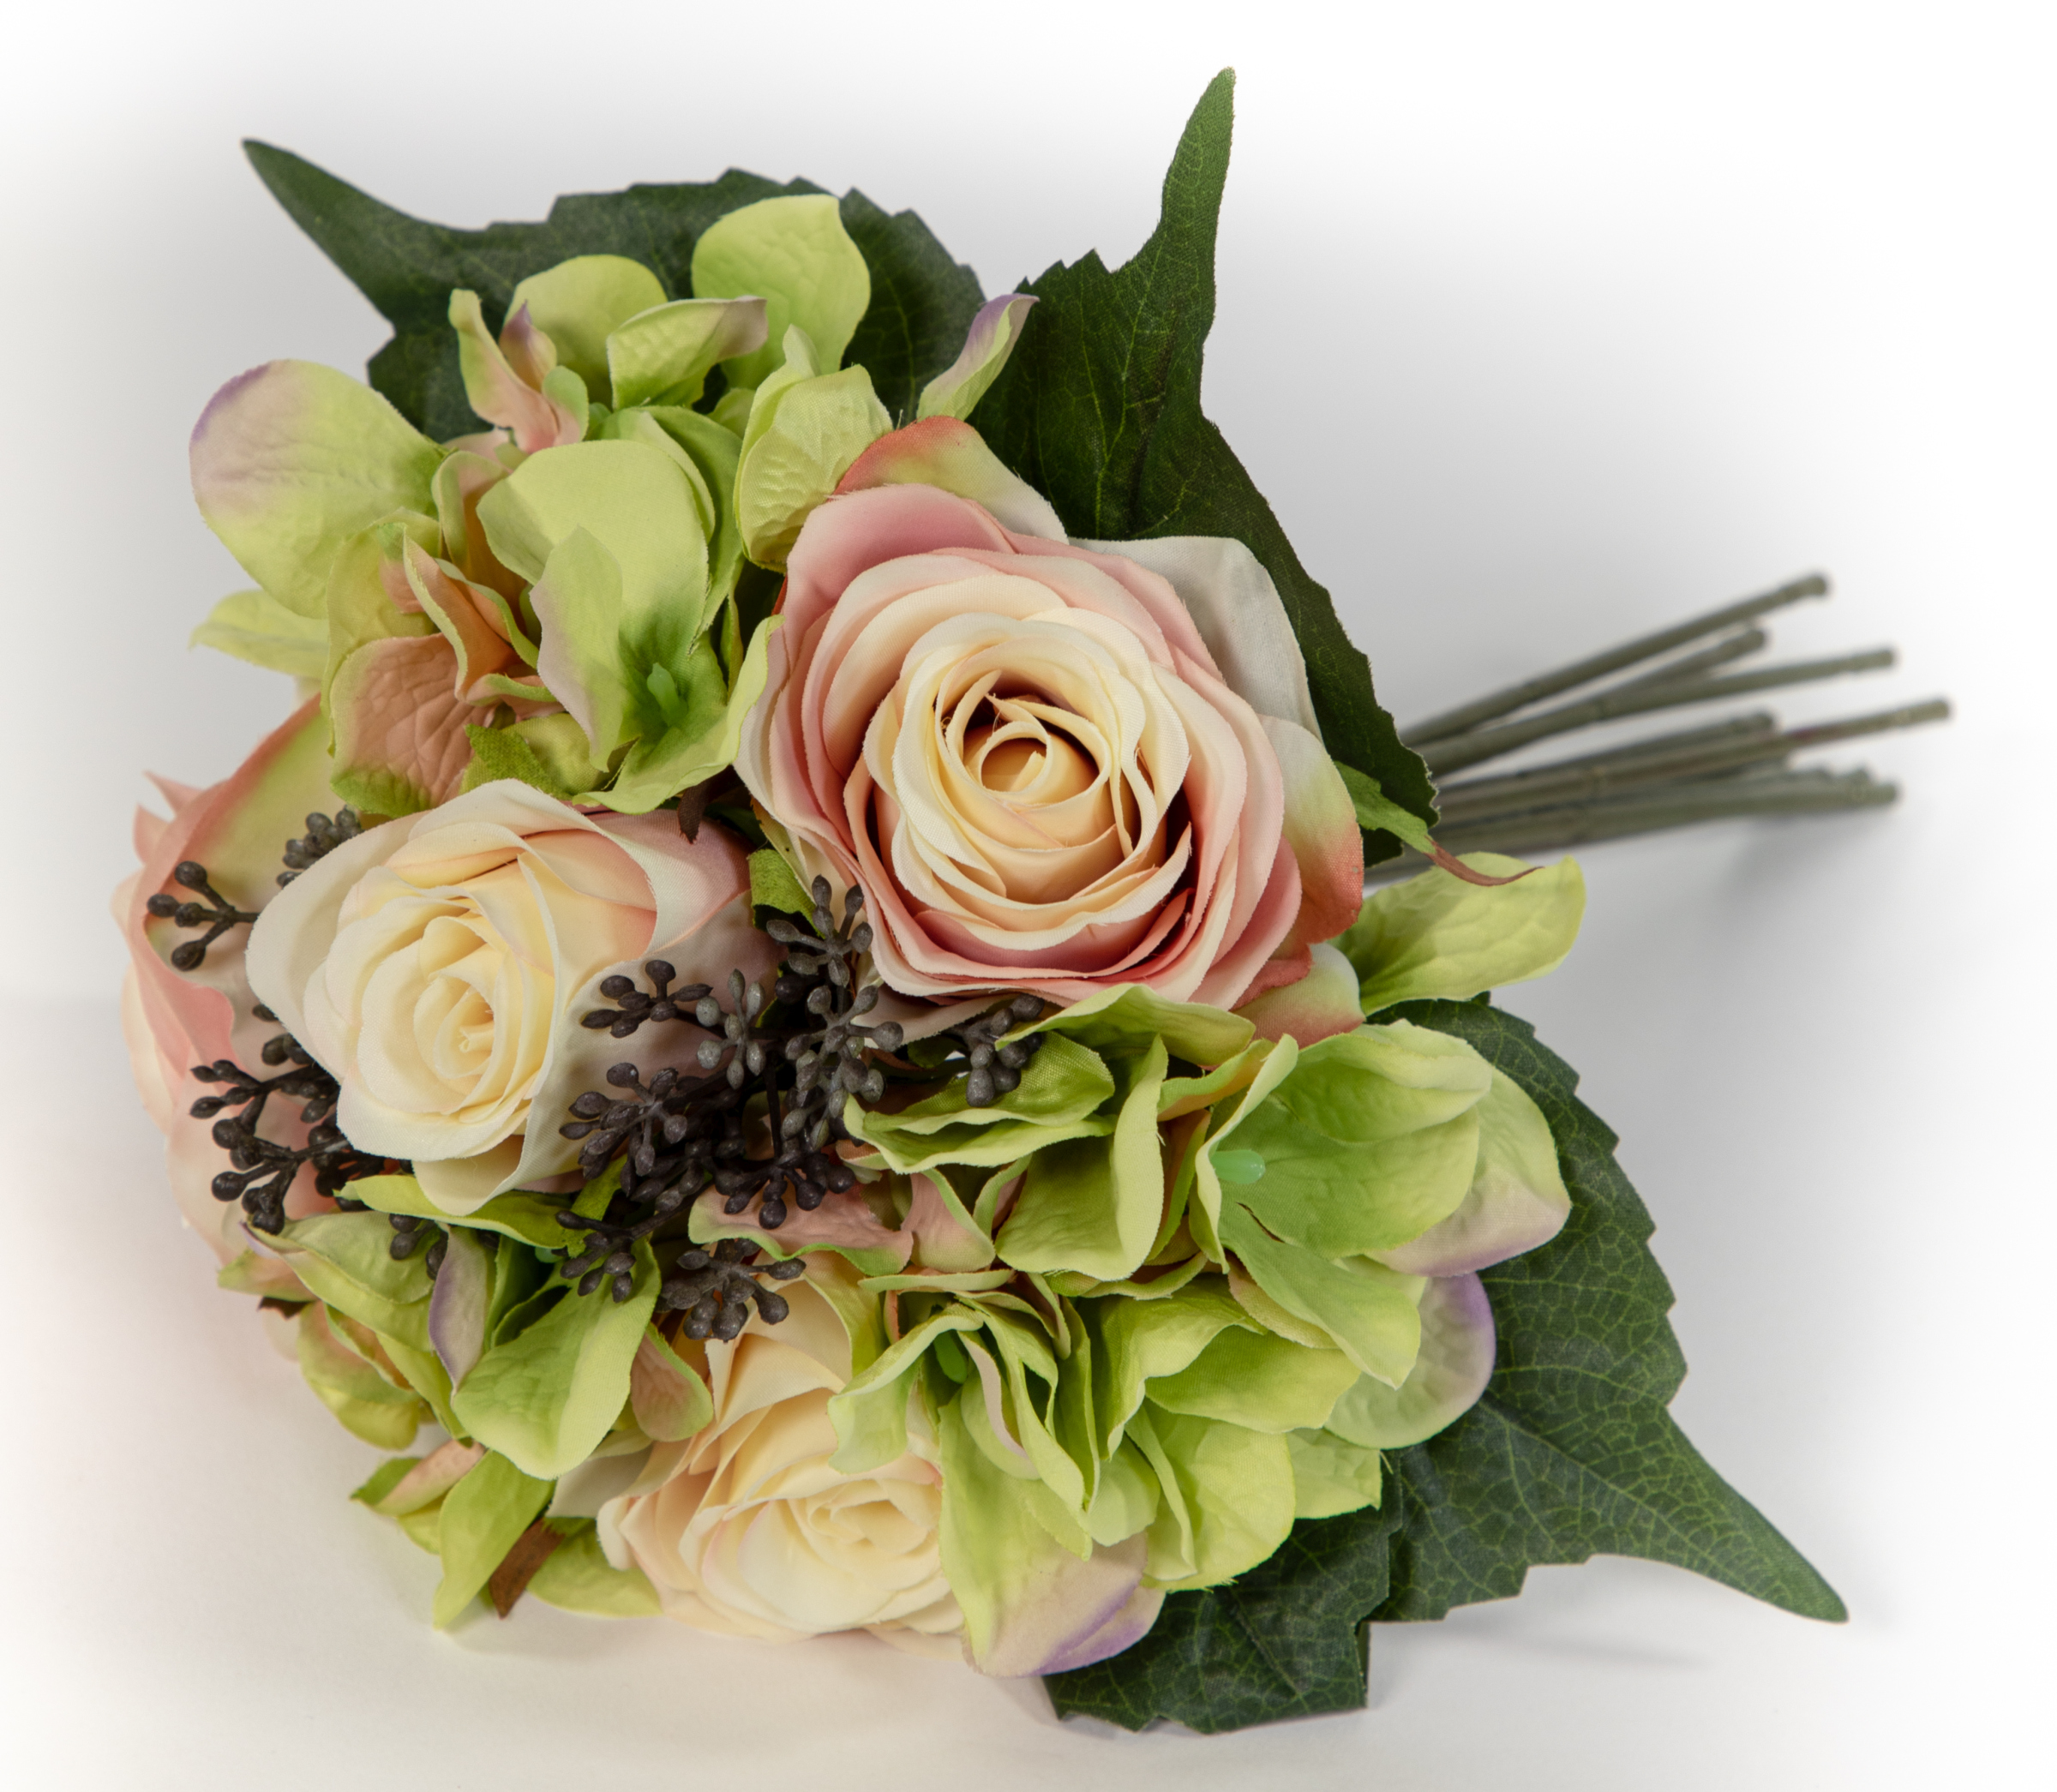 Rosen- Hortensienbouquet 30x24cm peach-rosa-grün GA Kunstblumen künstliche Blumen Strauß